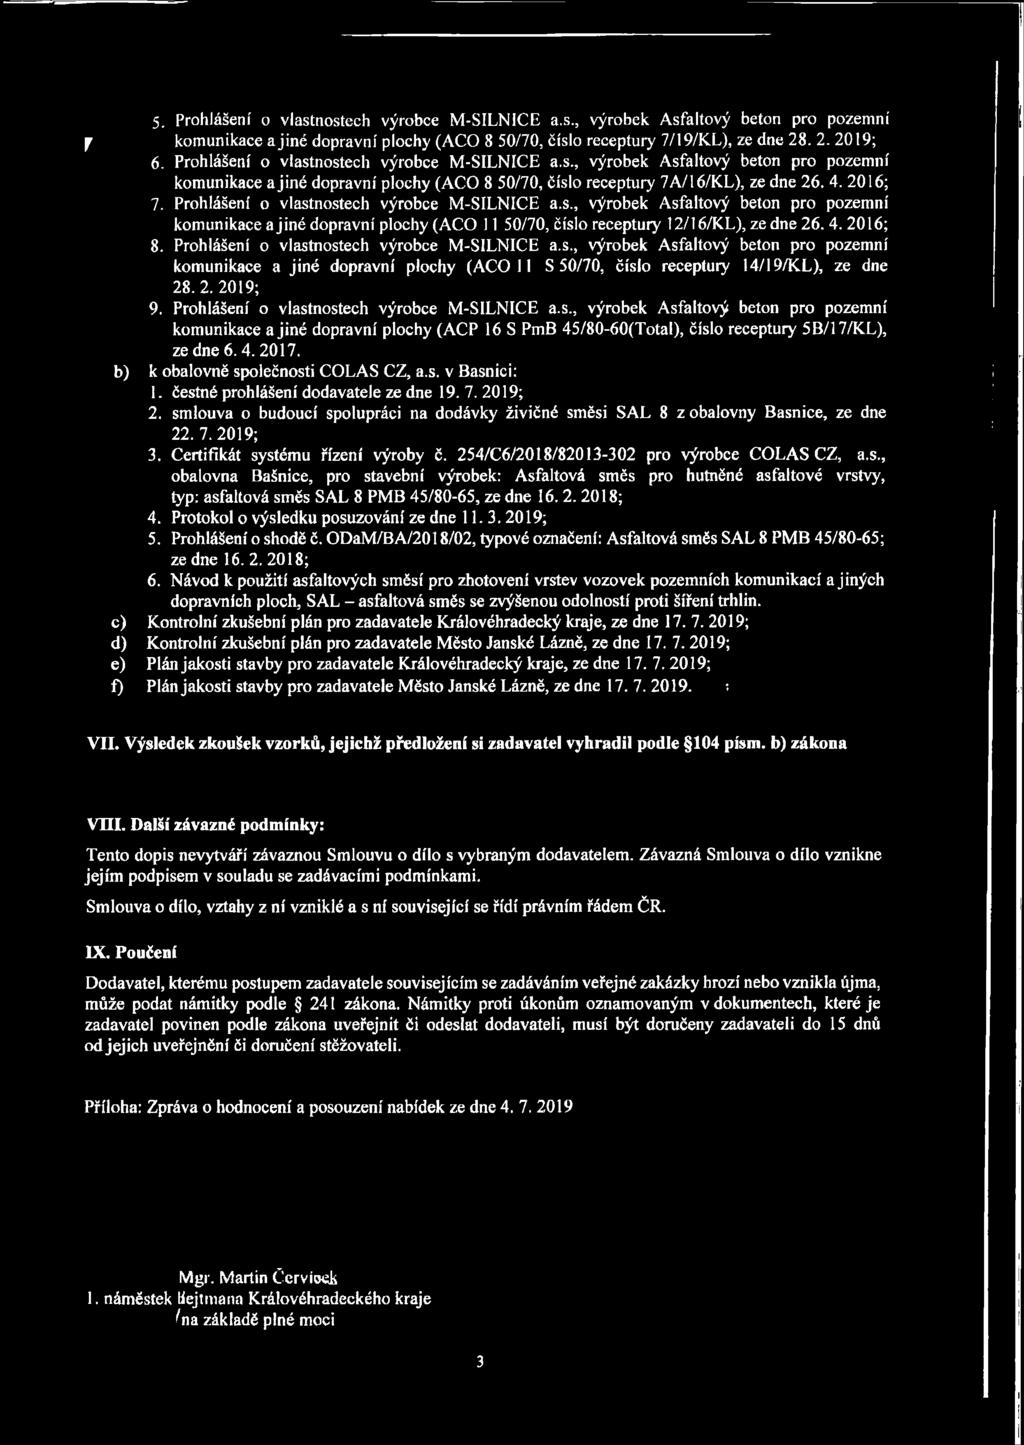 Prohlášení o vlastnostech výrobce M-SILNICE a.s., výrobek Asfaltový beton pro pozemní komunikace a jiné dopravní plochy (ACO 11 50/70, číslo receptury 12/16/KL), zedne26. 4. 2016; 8.